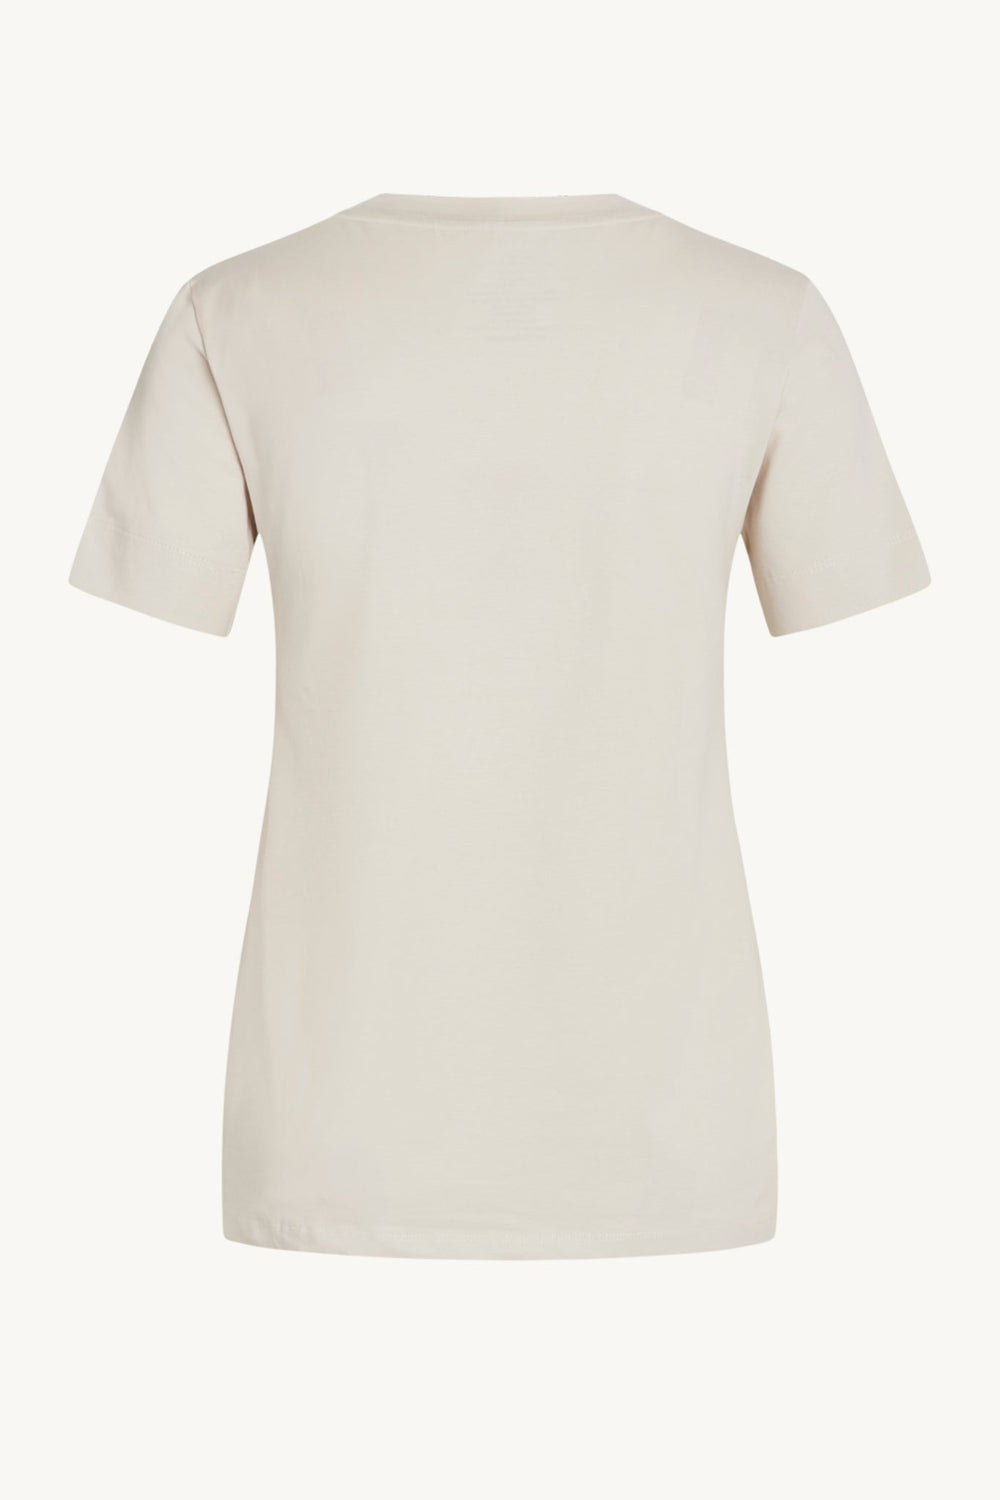 Aurora-Cw T-Shirt Sand Stone | Skjorter og bluser | Smuk - Dameklær på nett